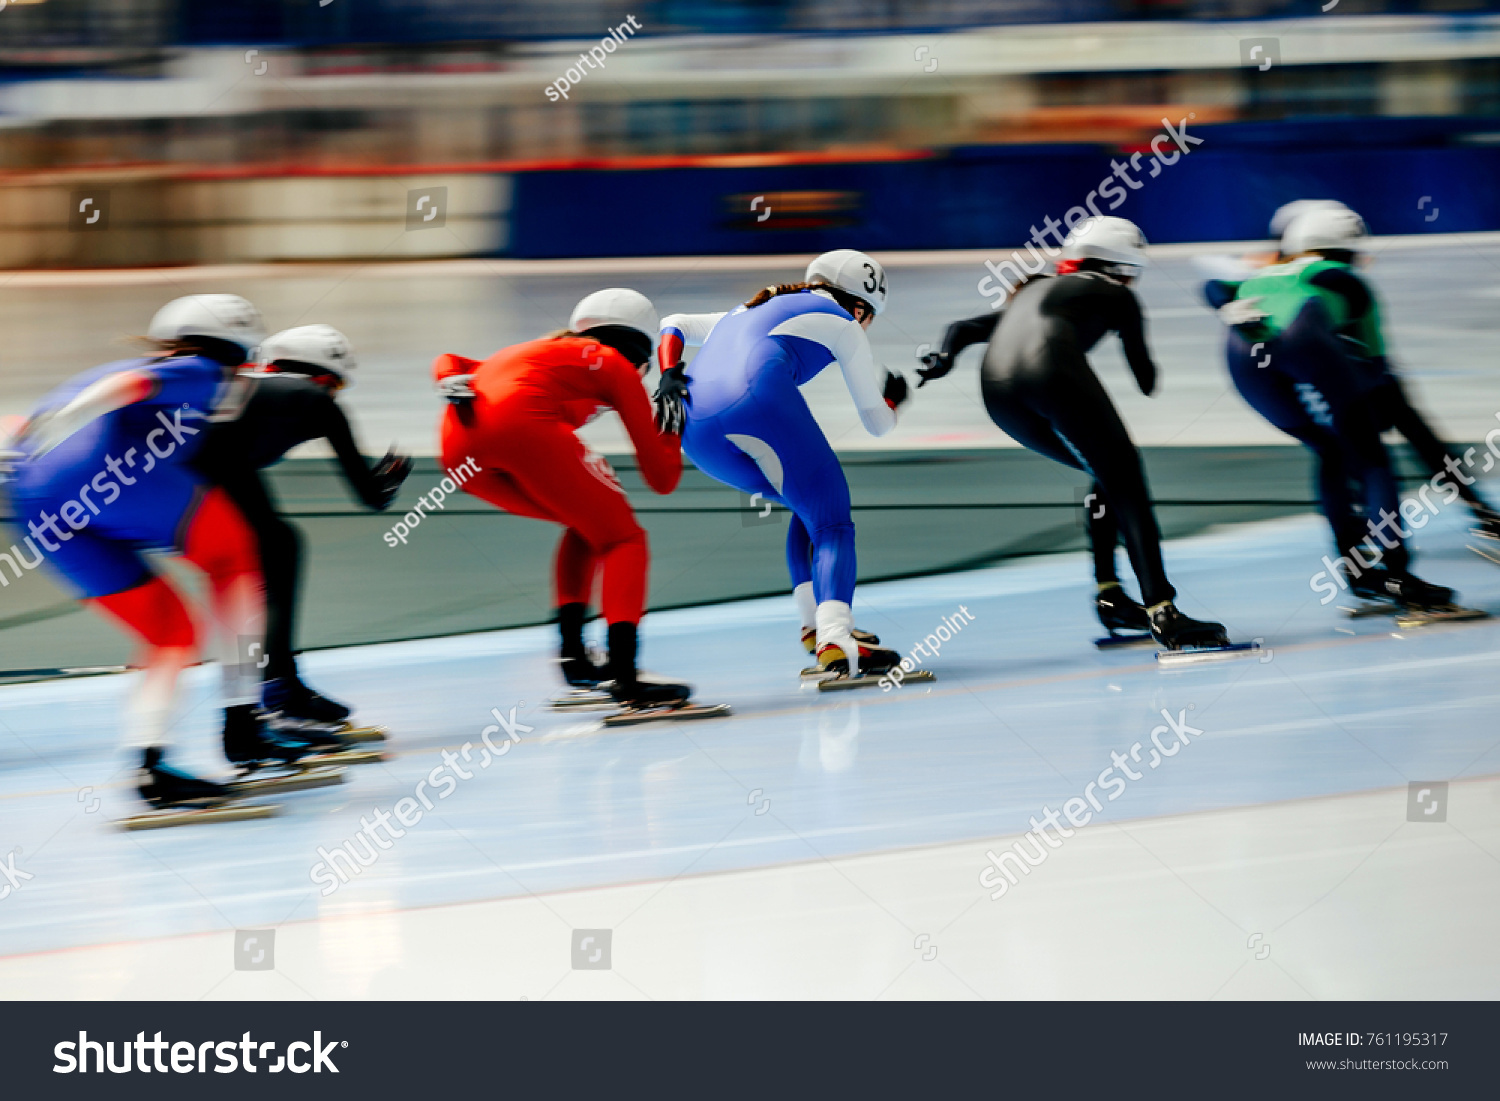 スピードスケートのマススタート競技で 女子スケート選手 の写真素材 今すぐ編集